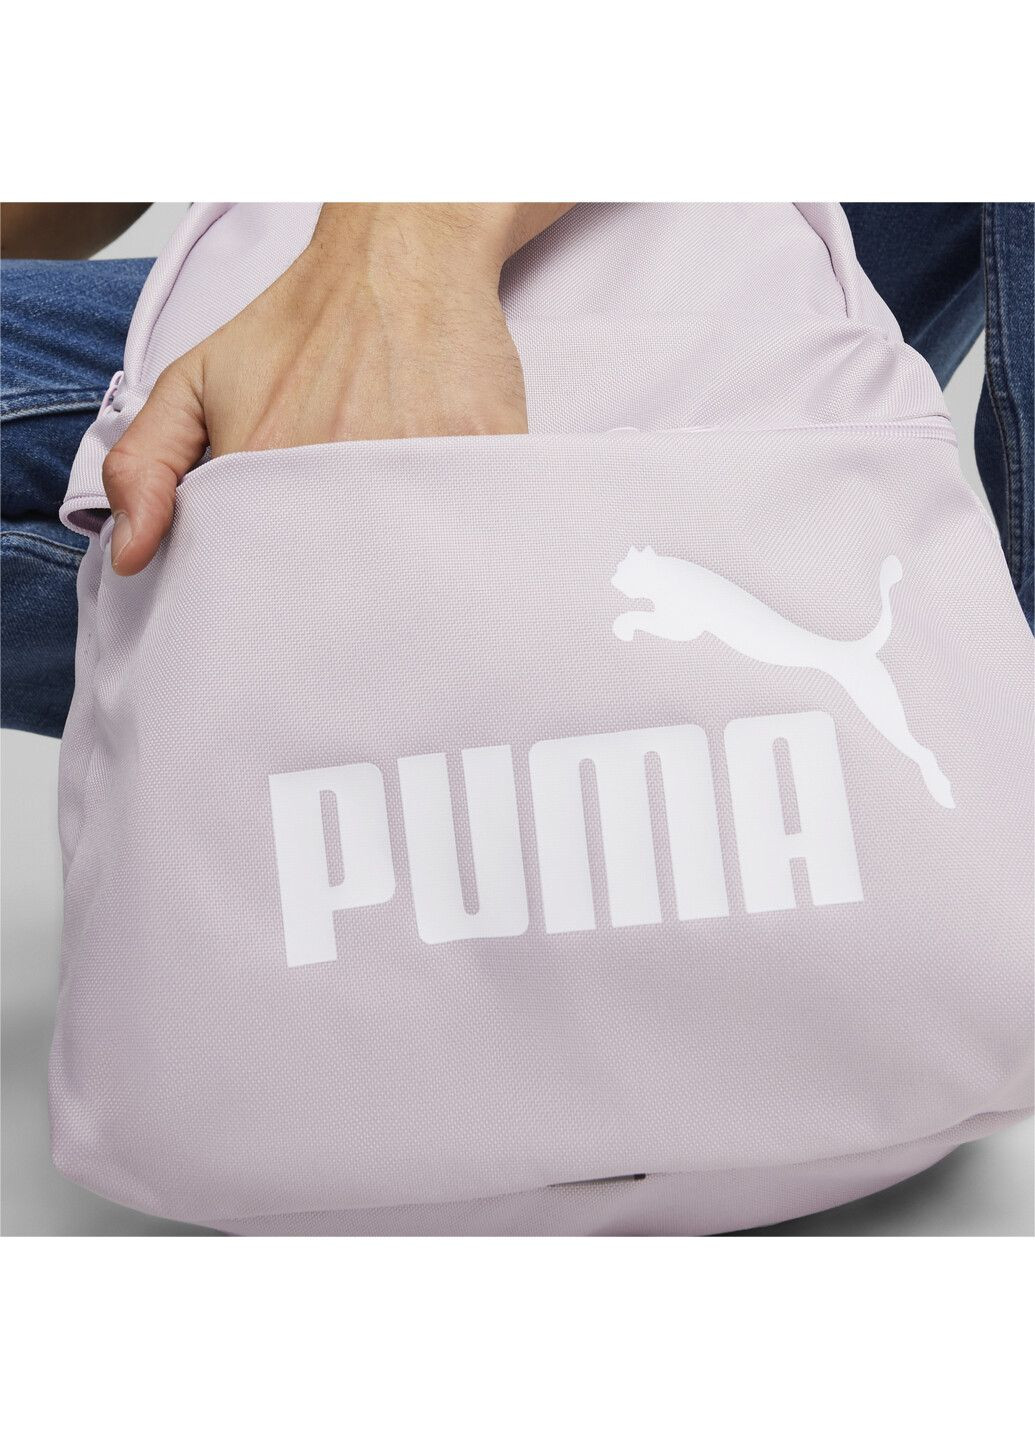 Рюкзак Phase Backpack Puma (278652568)